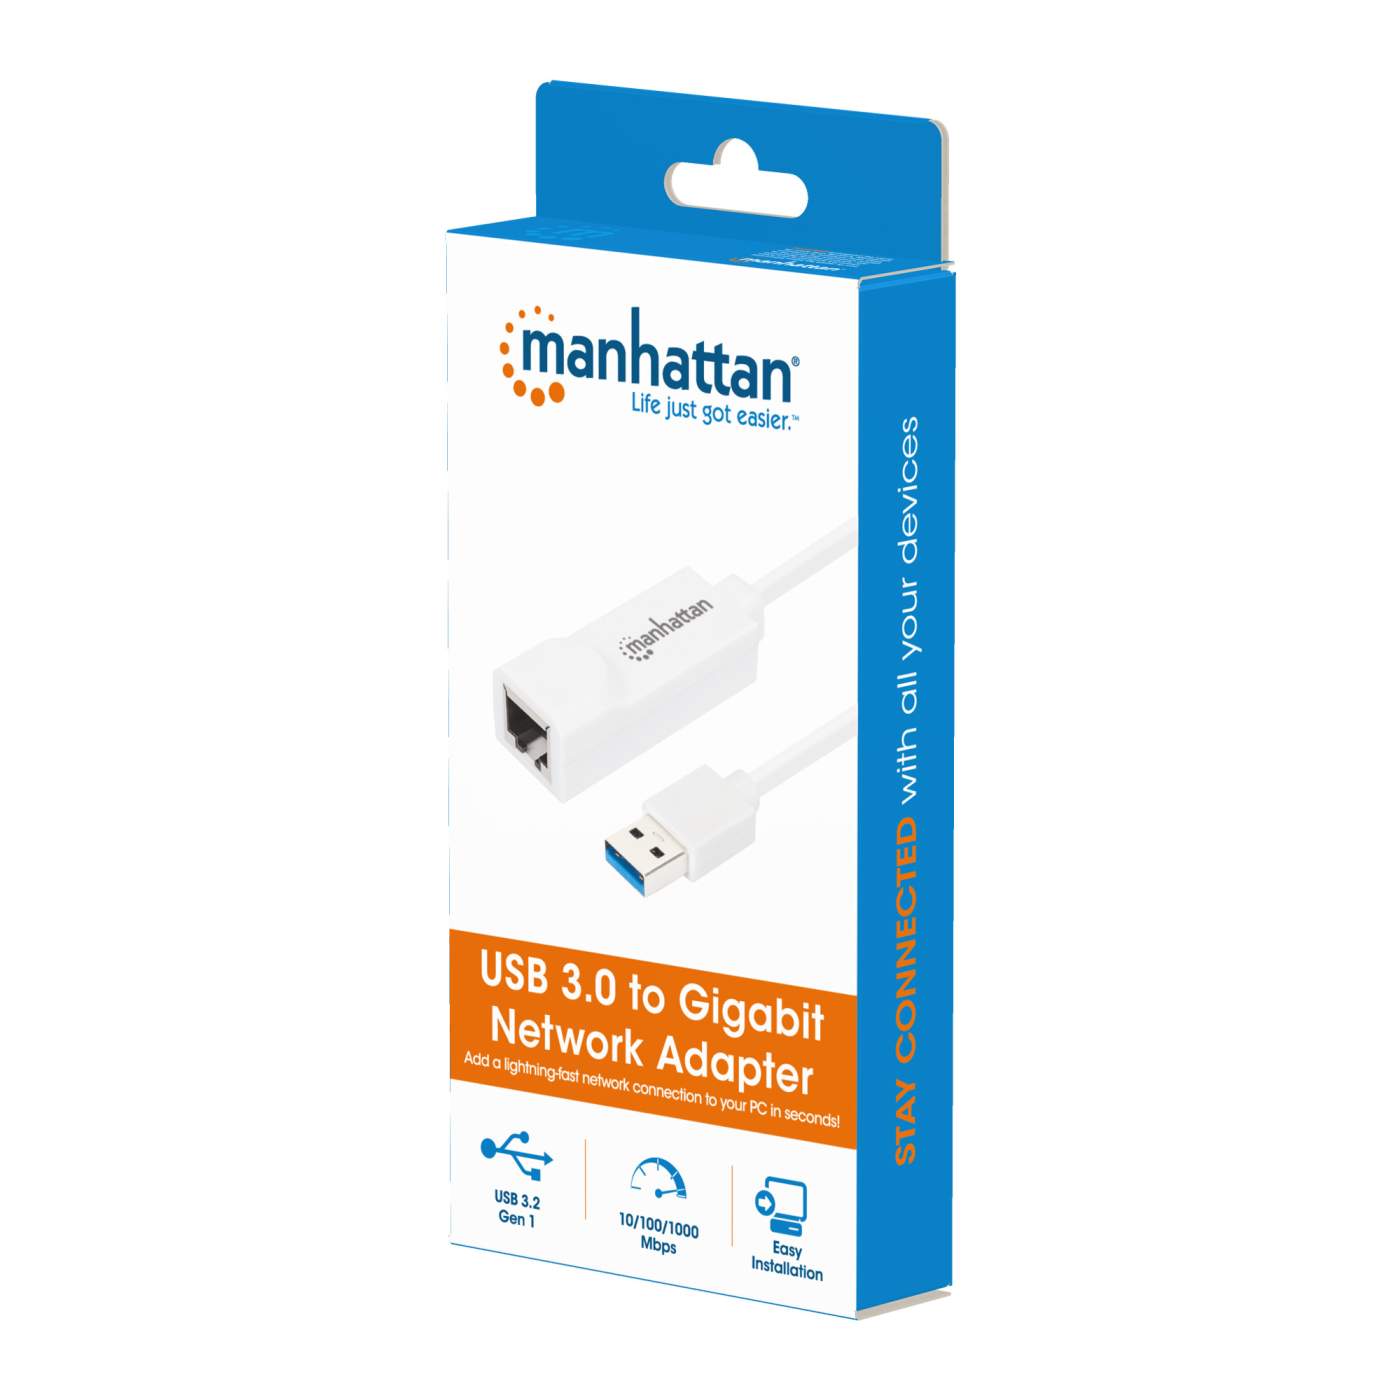 Manhattan 5-Port Gigabit Ethernet Switch (560696)